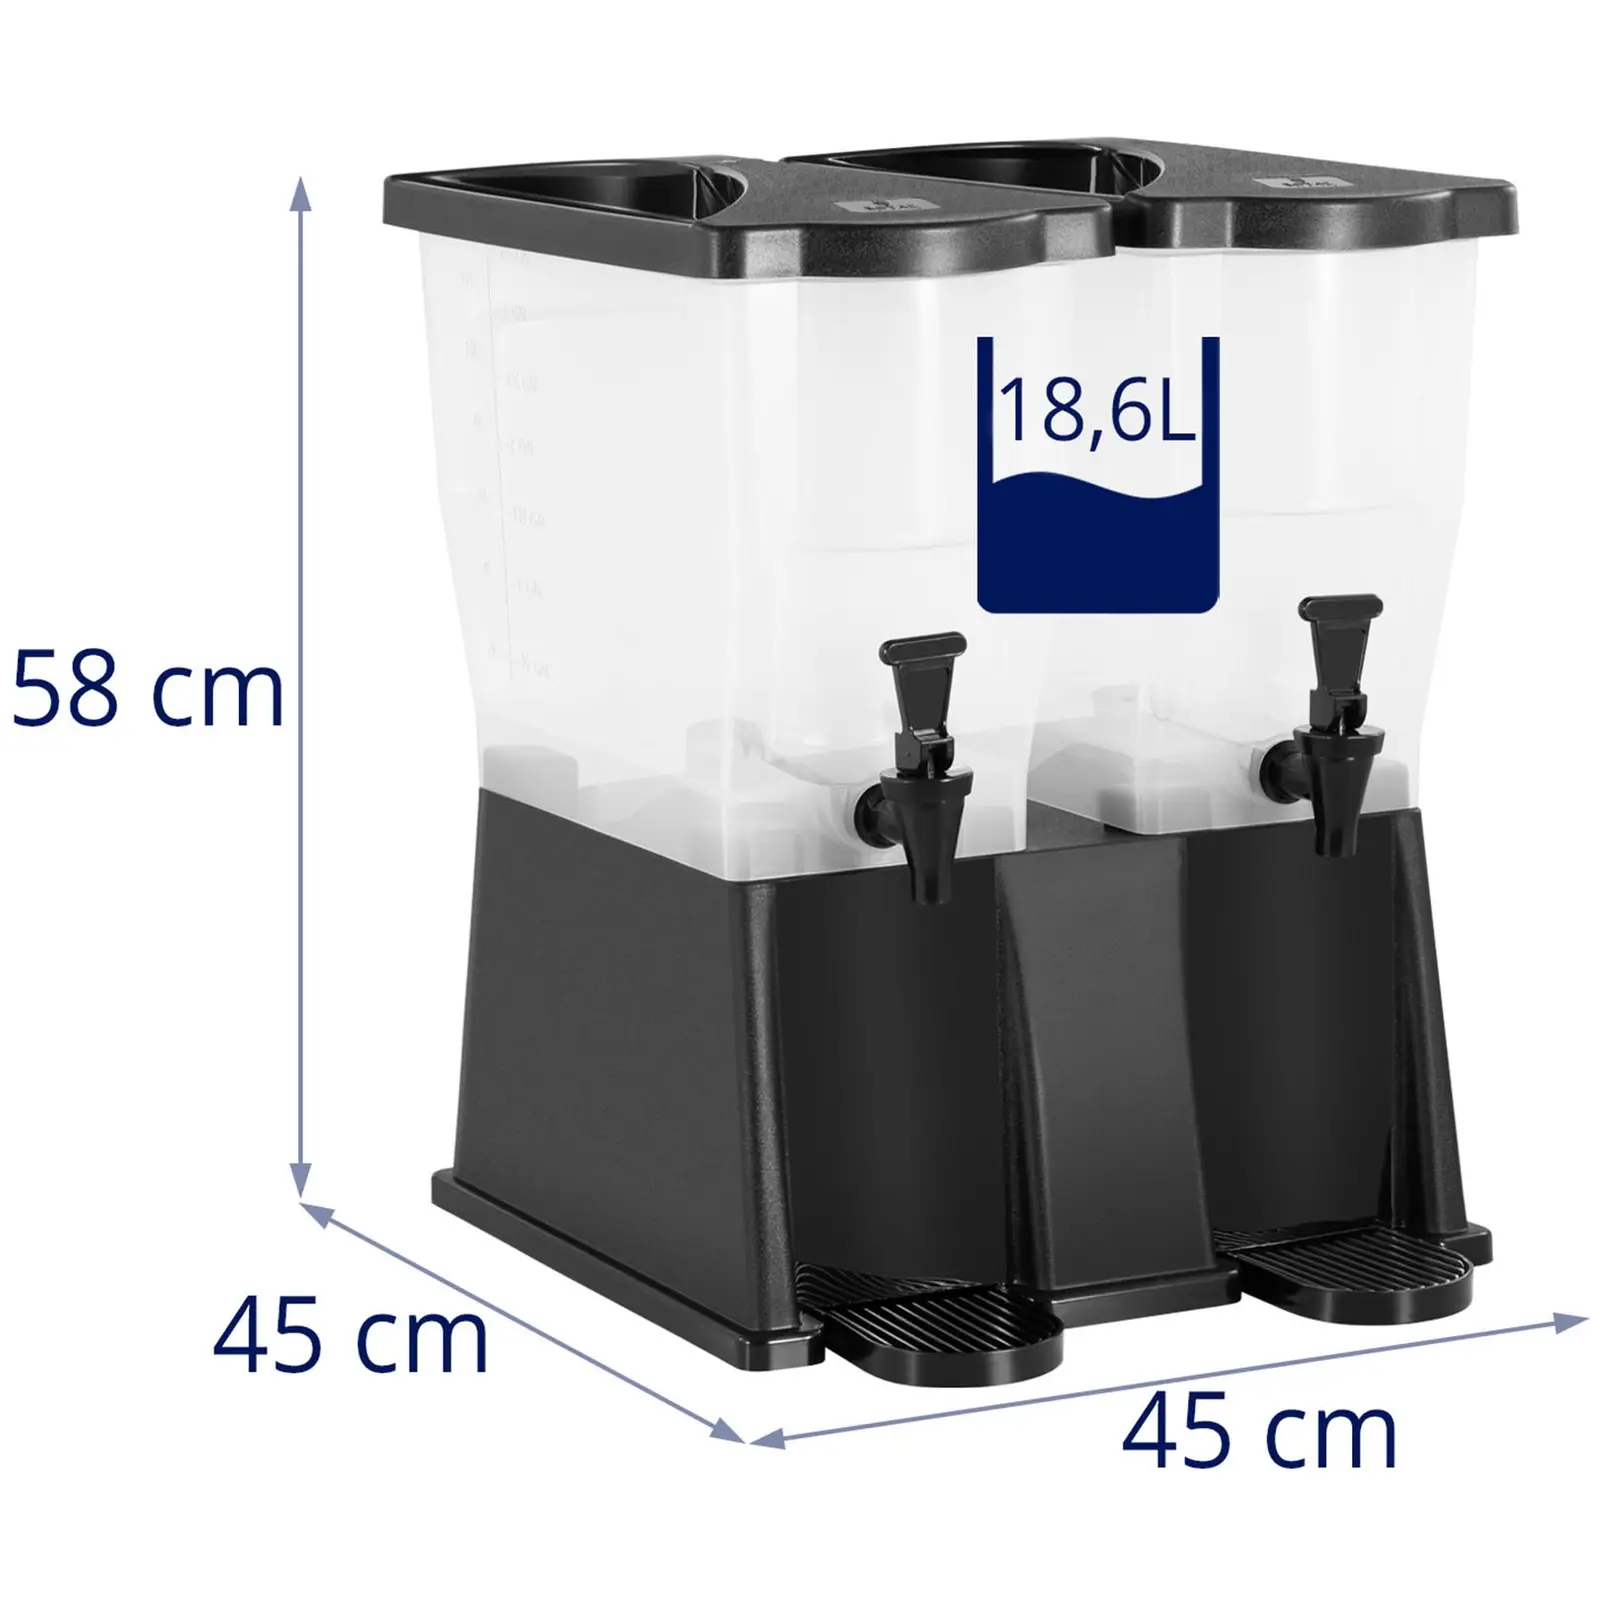 Juicedispenser - 18,6 L - plast - 2 beholdere - Royal Catering